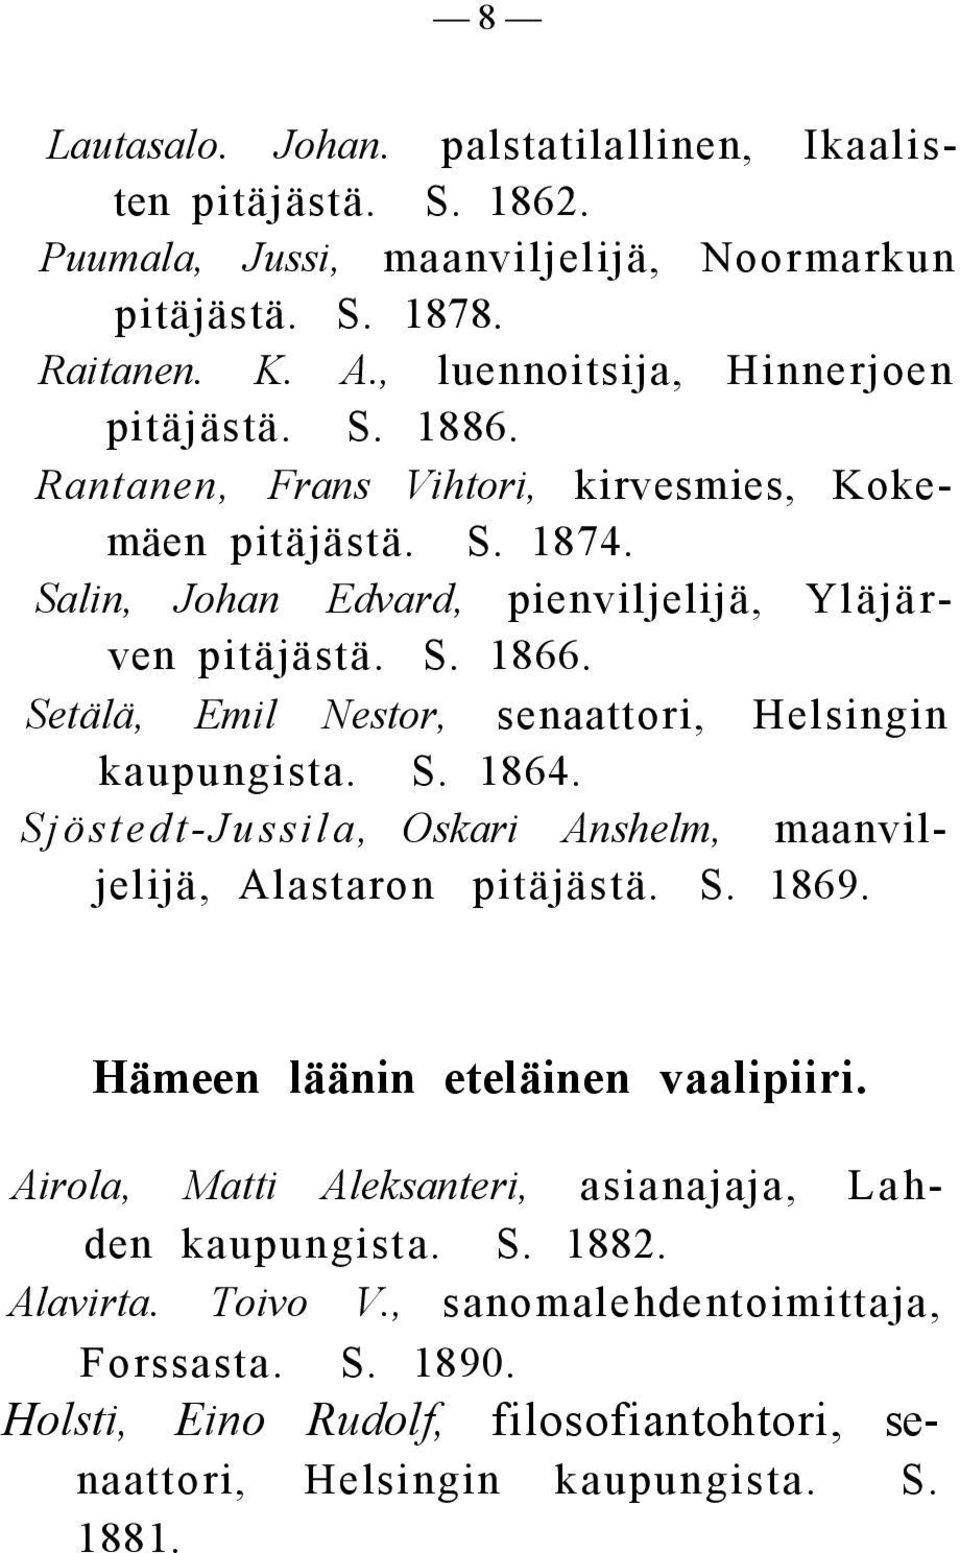 Setälä, Emil Nestor, senaattori, Helsingin kaupungista. S. 1864. Sjöstedt-Jussila, Oskari Anshelm, maanviljelijä, Alastaron pitäjästä. S. 1869. Hämeen läänin eteläinen vaalipiiri.